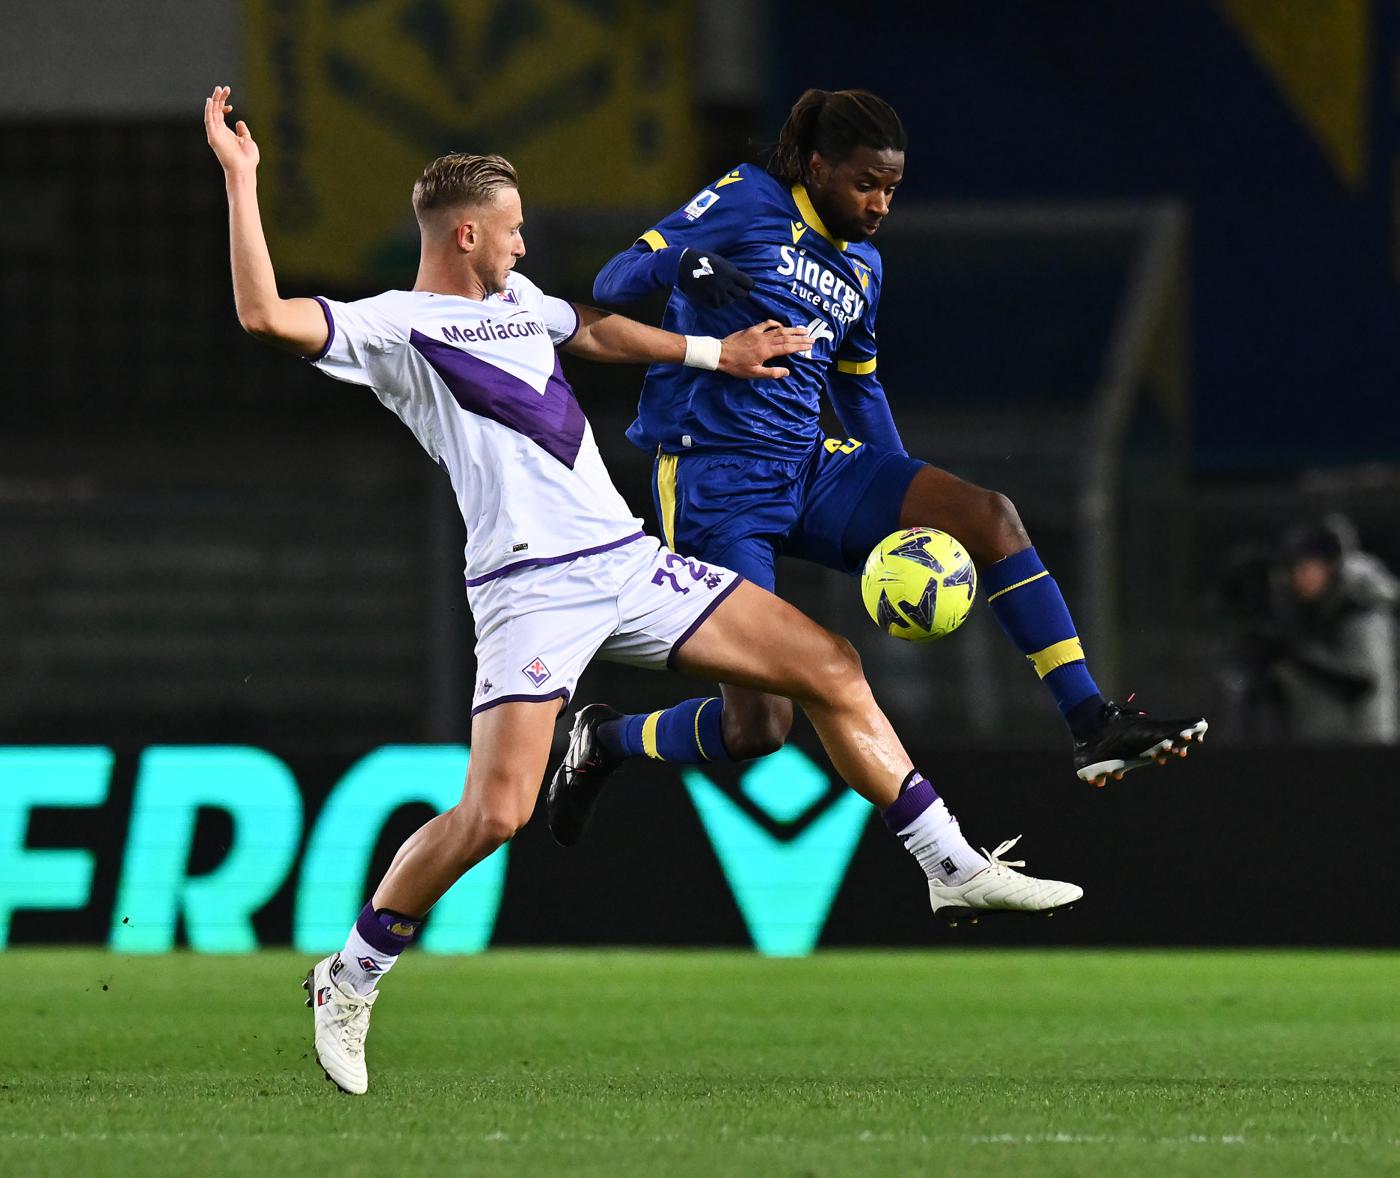 Verona gegen Fiorentina - 0-3. Italienische Meisterschaft, Runde 24. Spielbericht, Statistik.